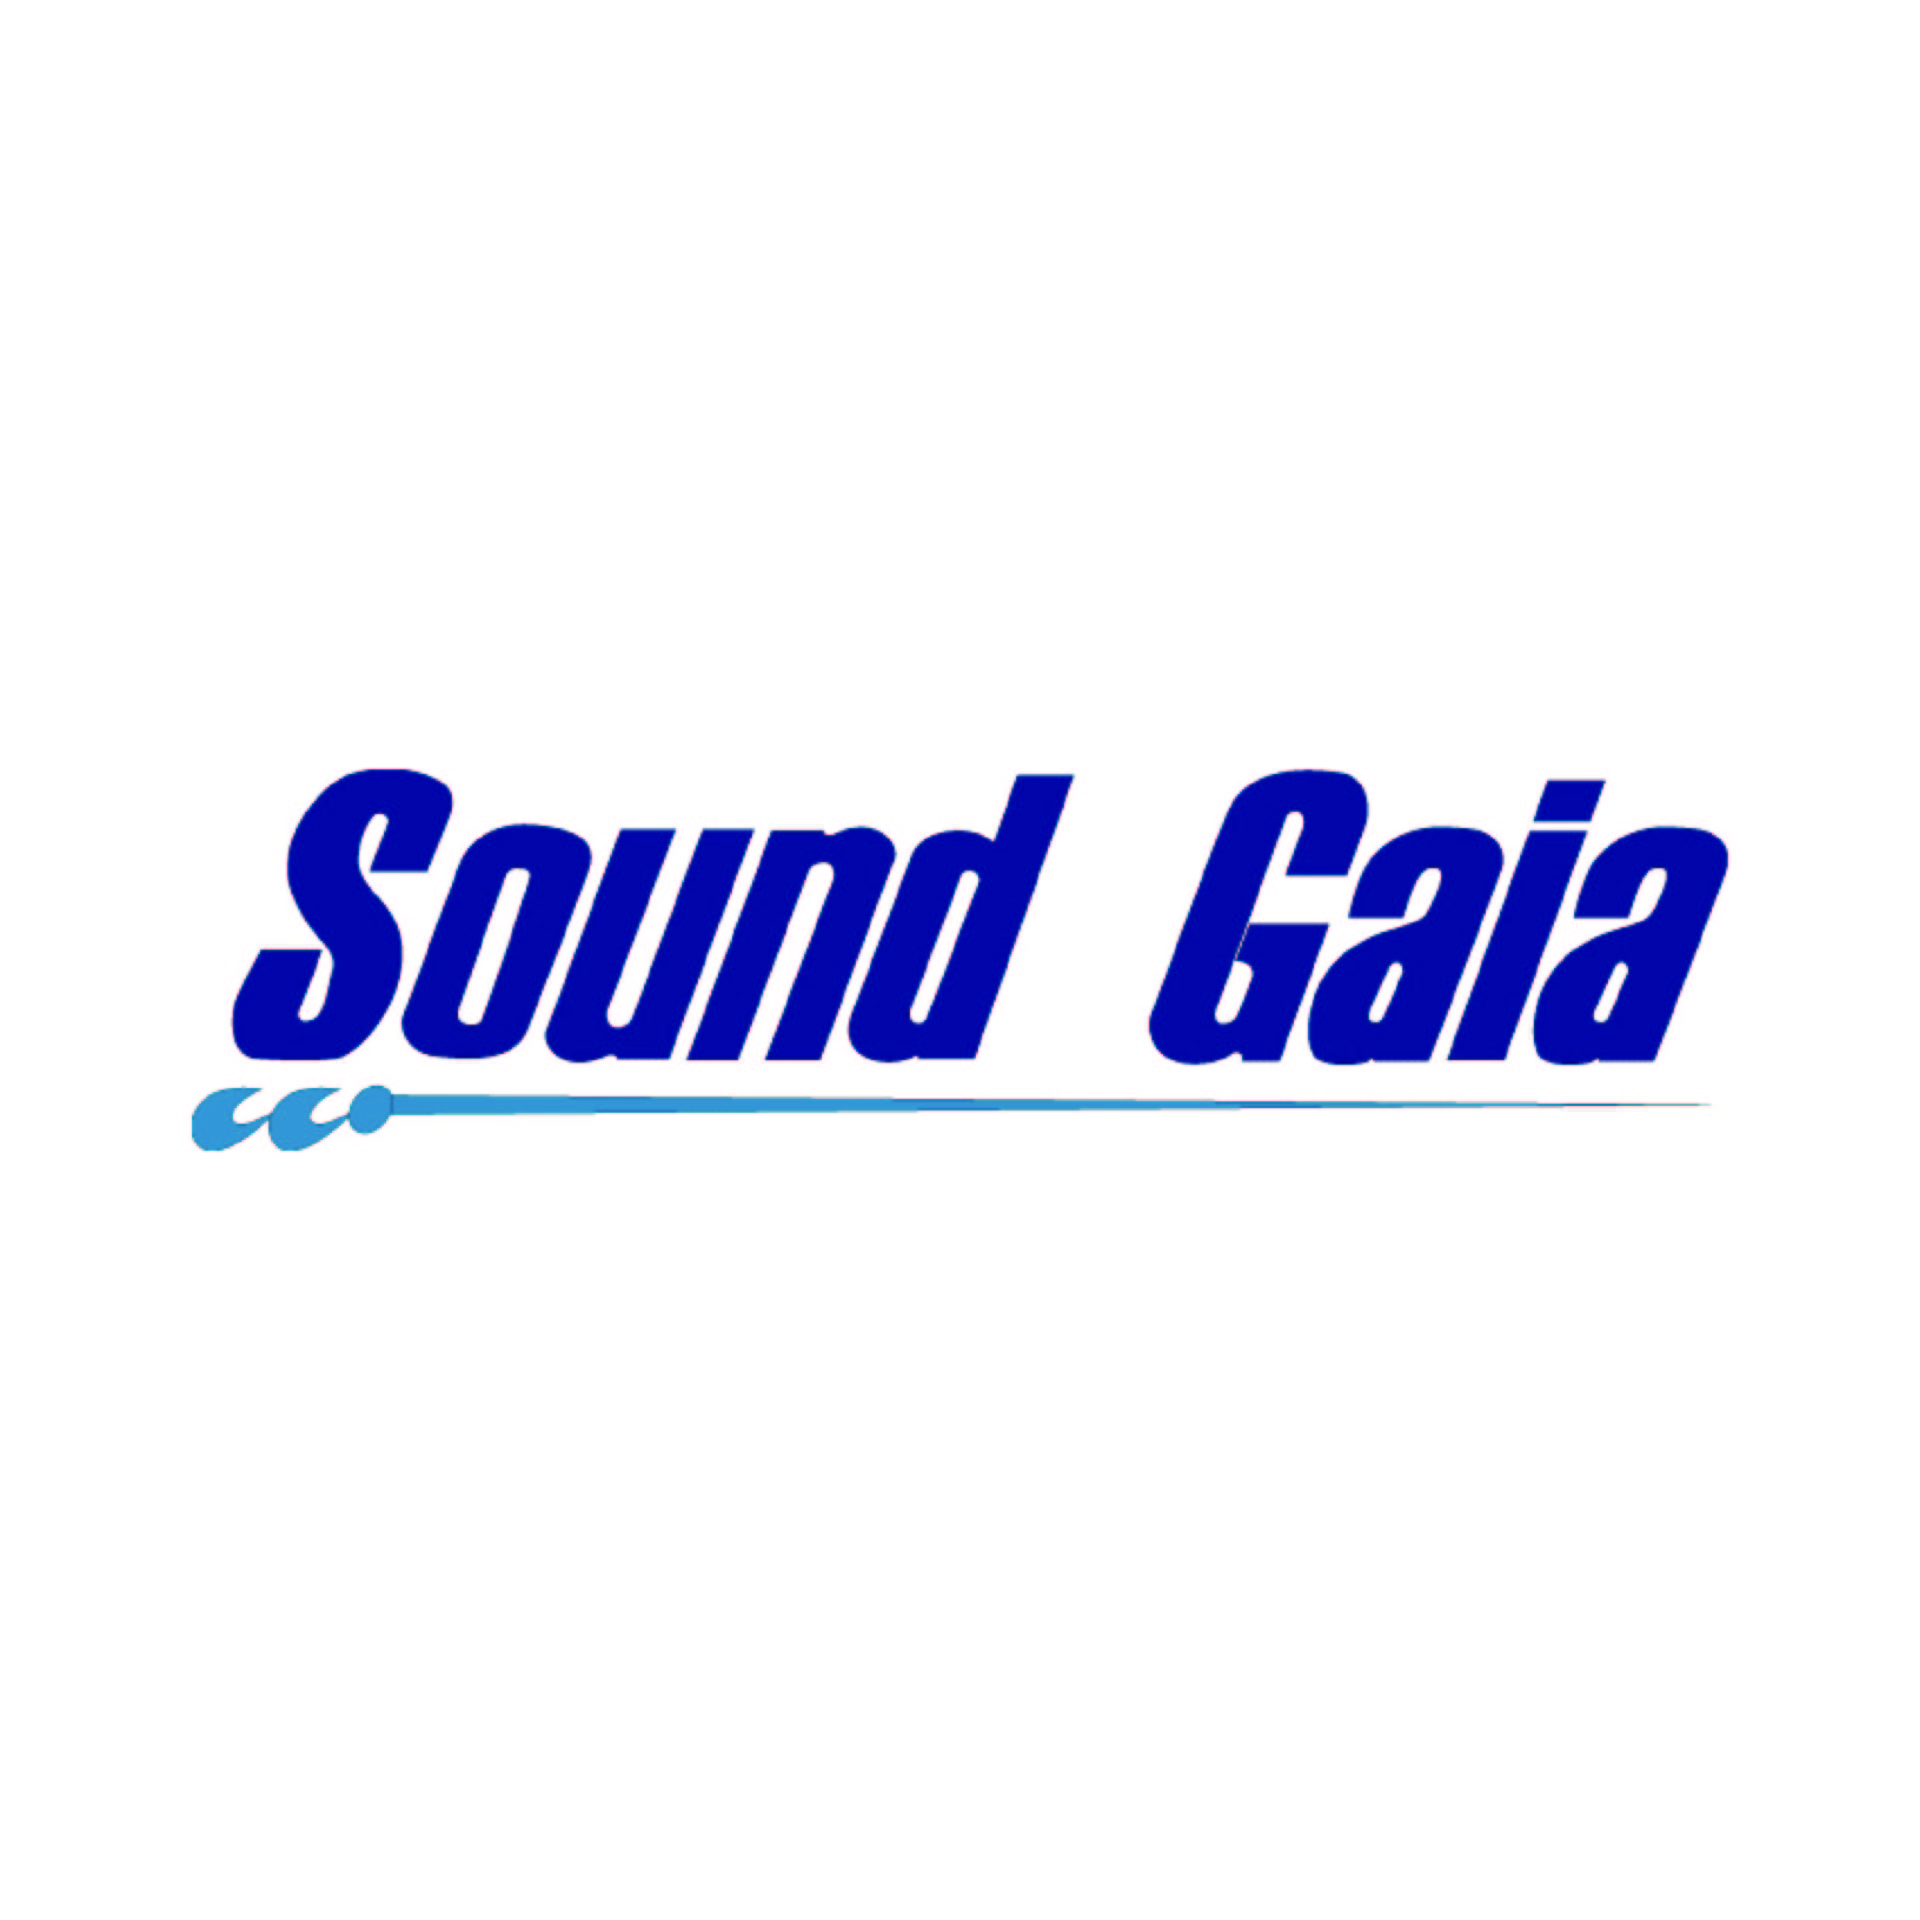 soundgaia_manager_naoki